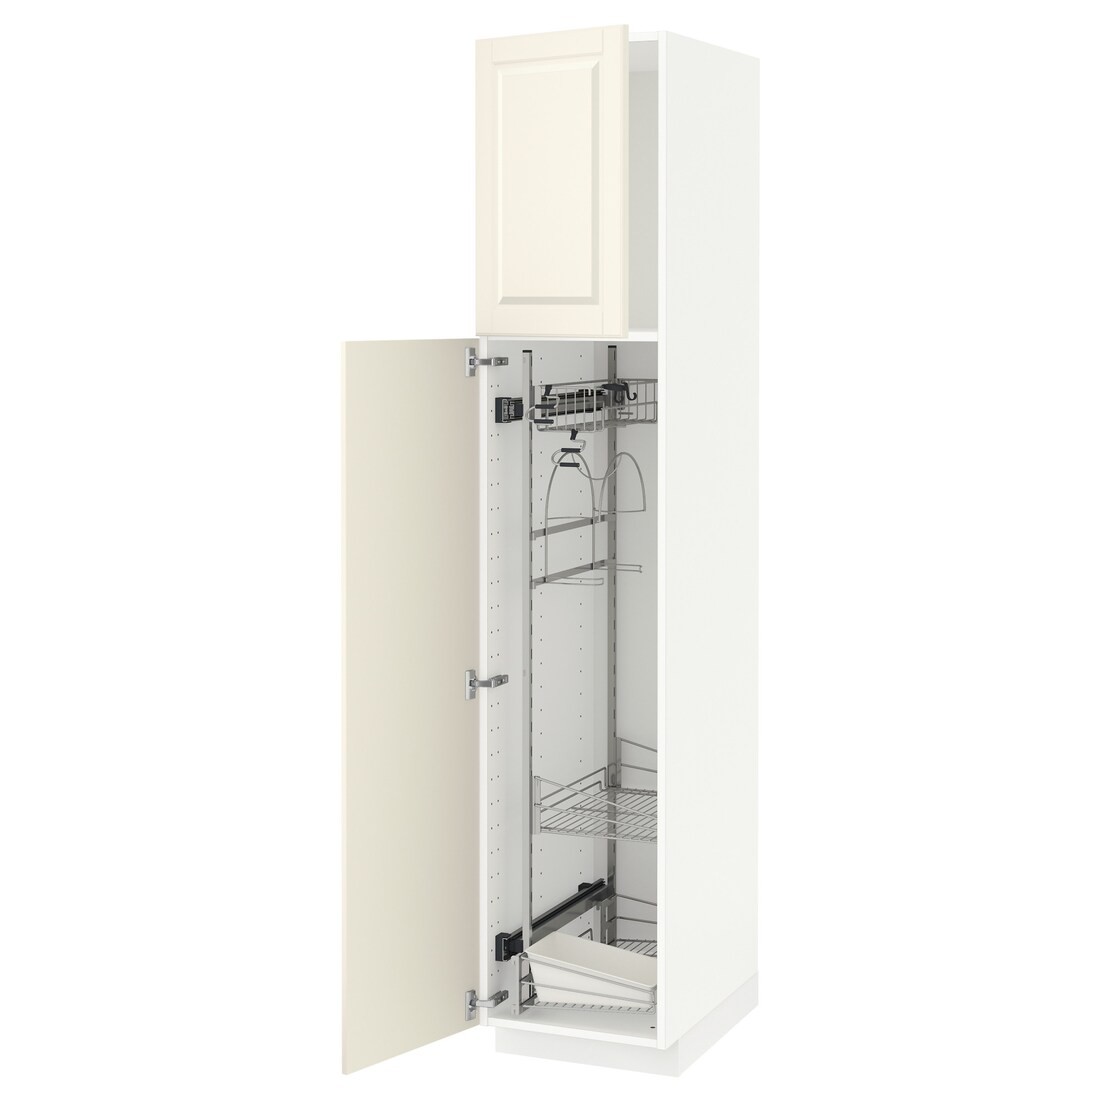 METOD МЕТОД Высокий шкаф с отделением для аксессуаров для уборки, белый / Bodbyn кремовый, 40x60x200 см